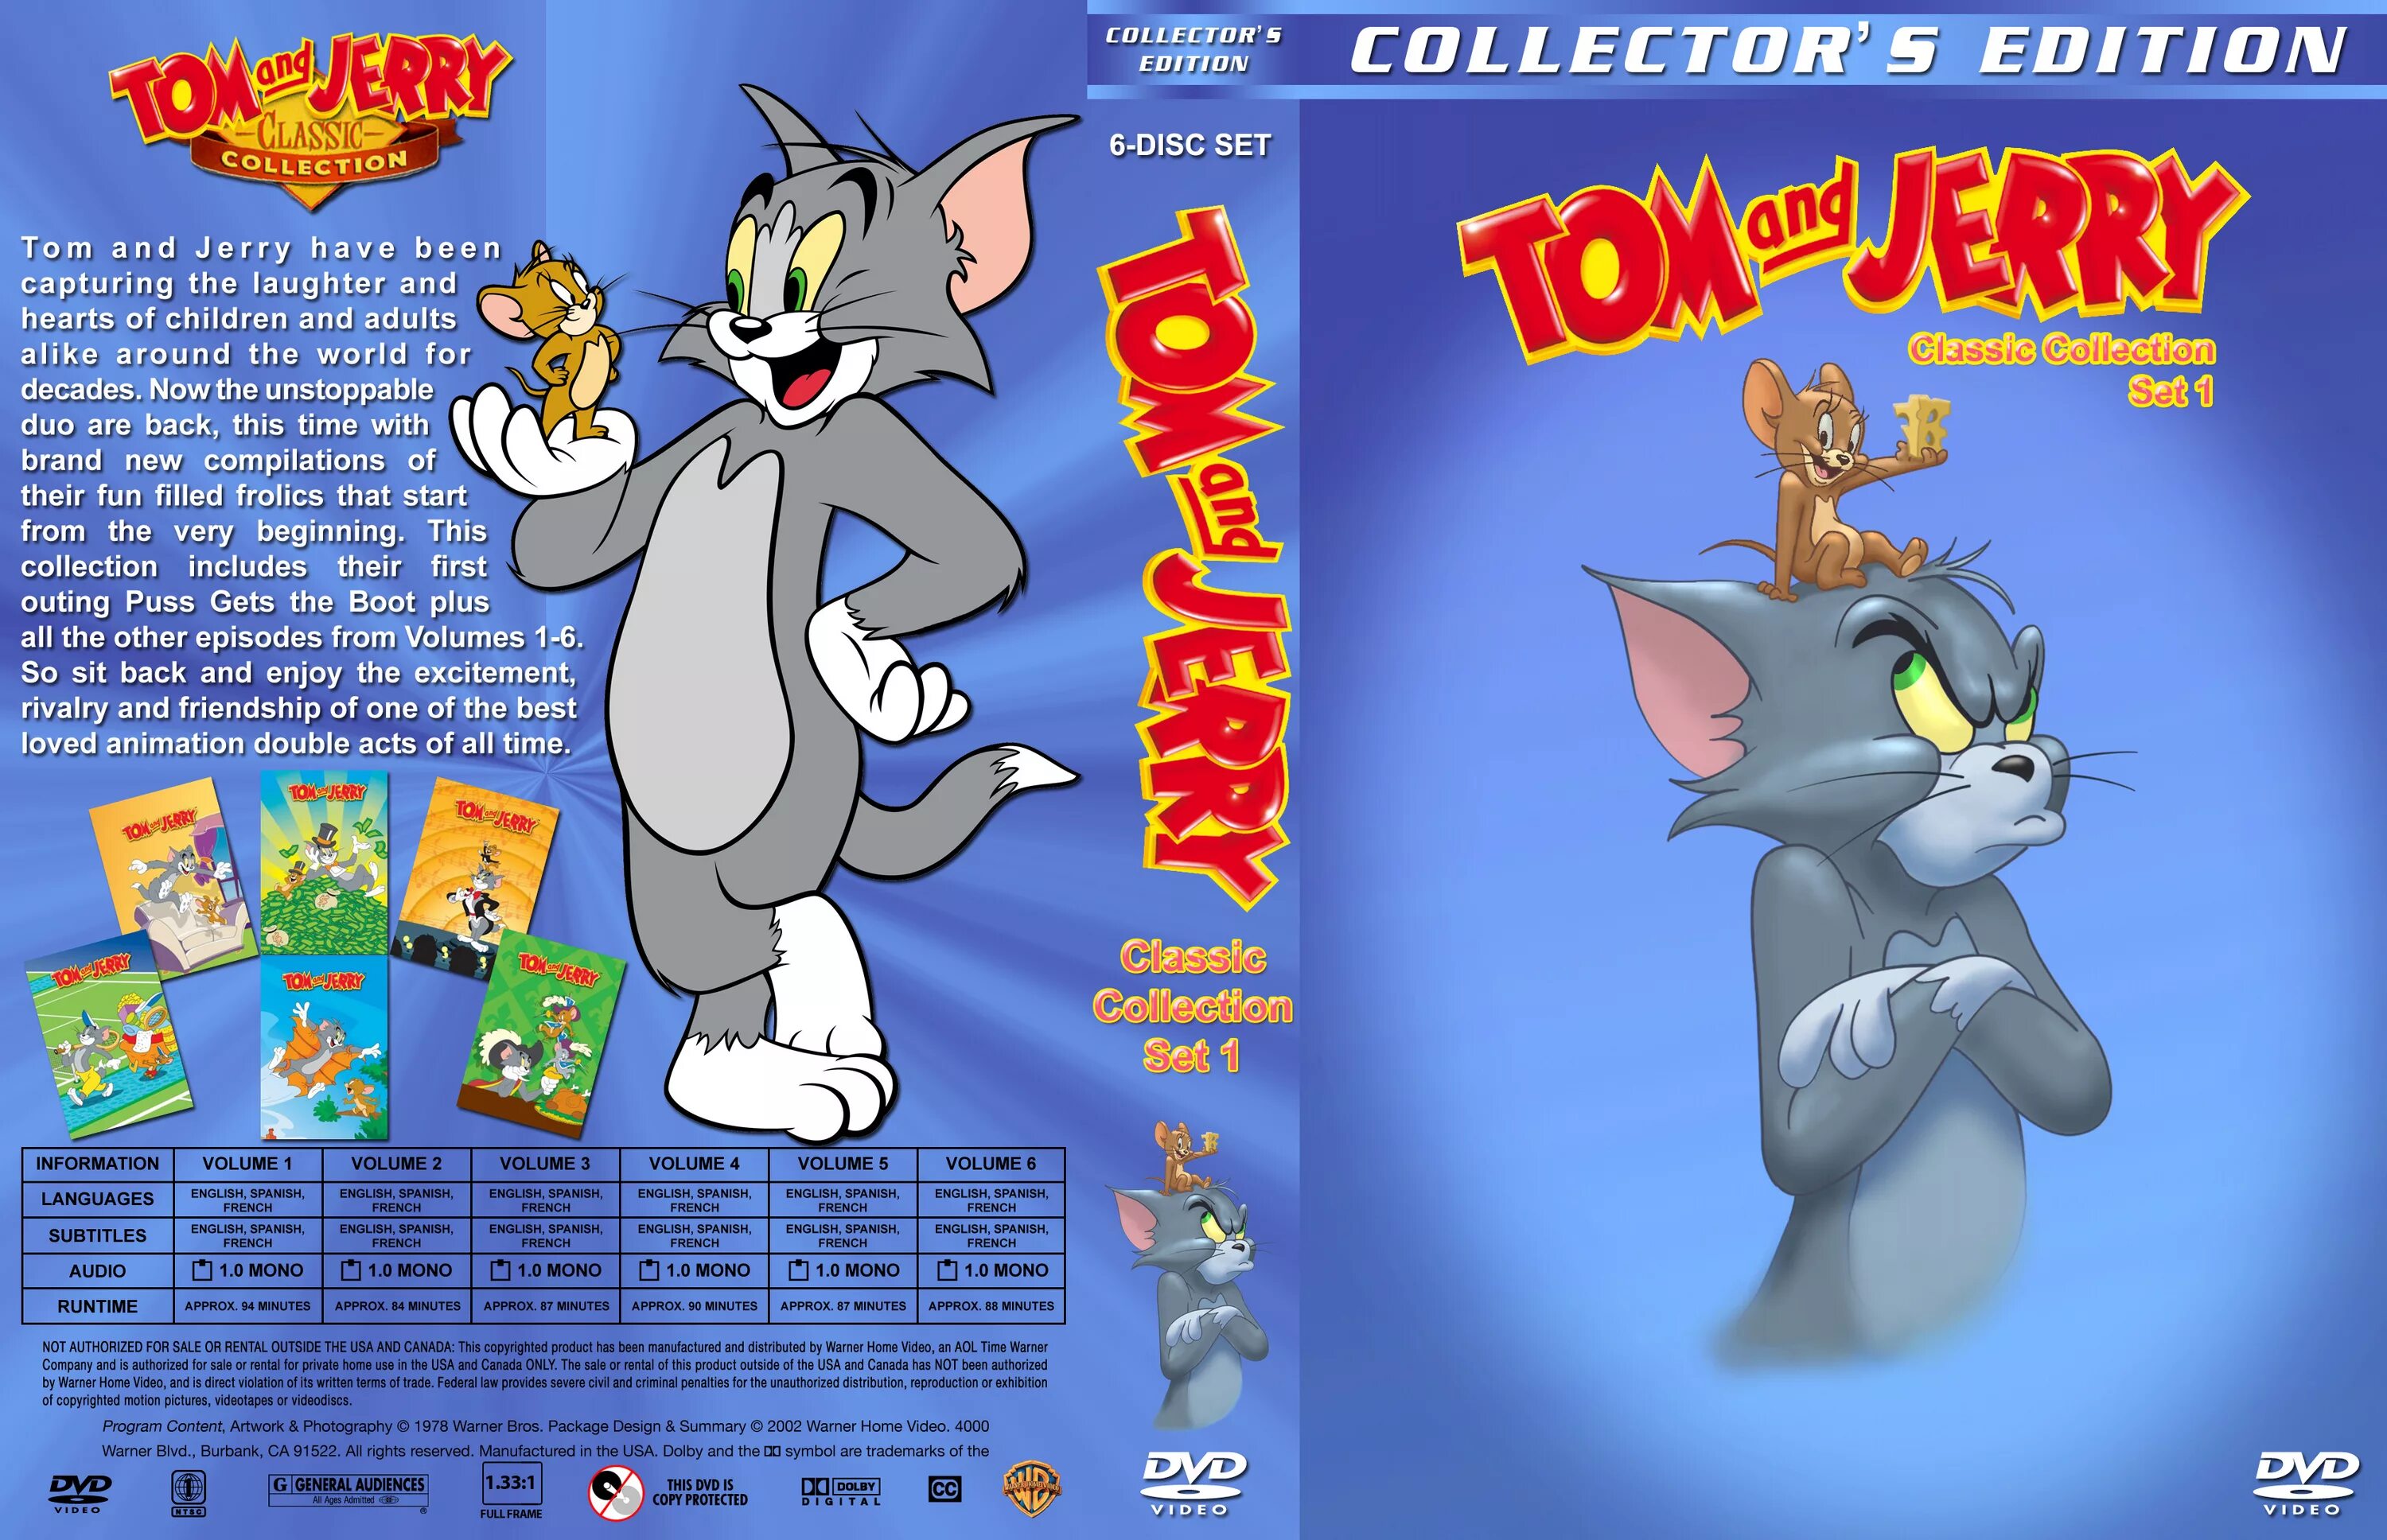 Том и джерри делать. Том и Джерри двд том 1. Том и Джерри (Tom and Jerry) 1940. Tom and Jerry (2021) том и Джерри обложка. Tom and Jerry collection DVD.